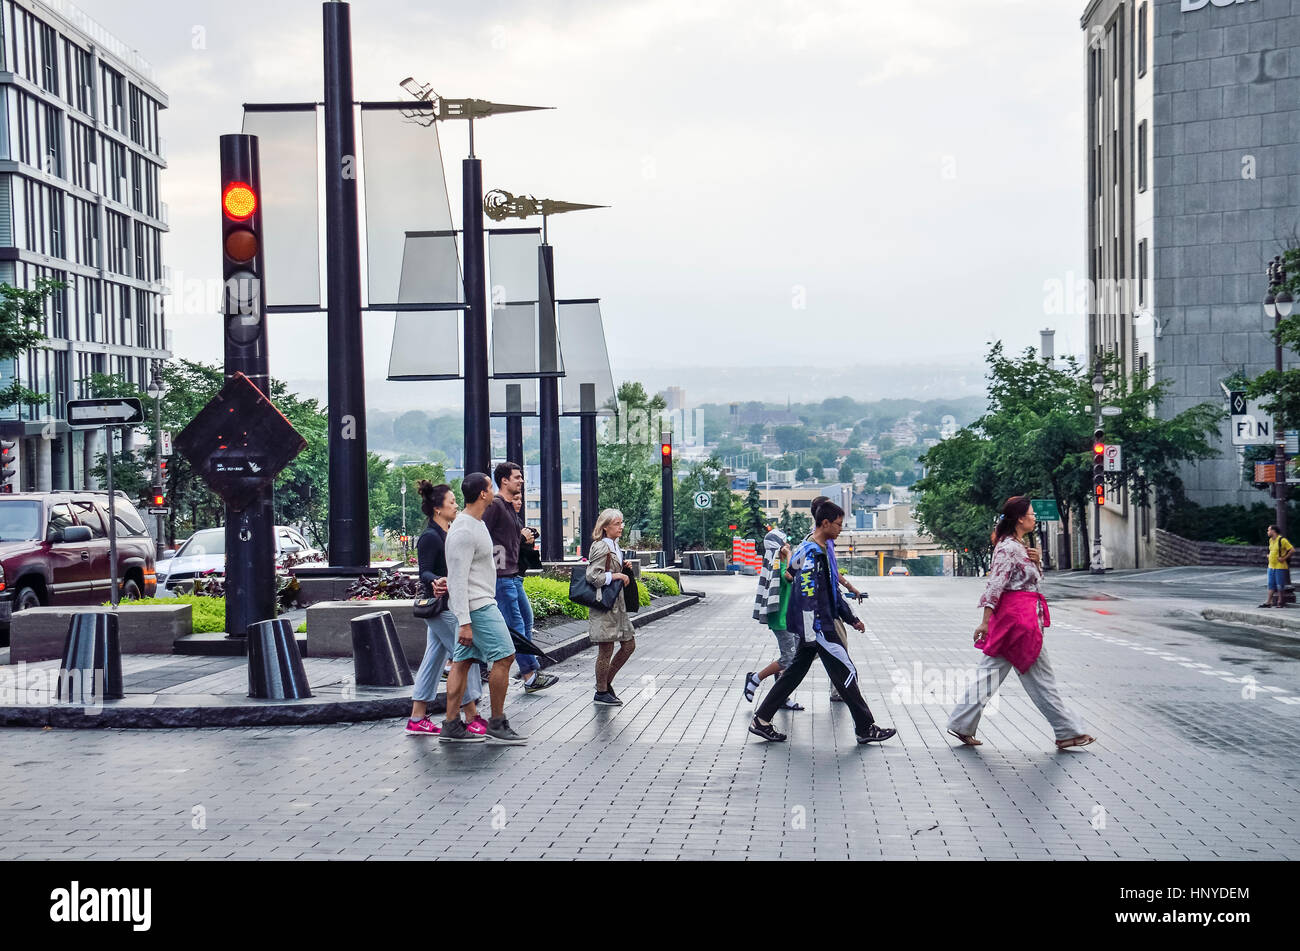 La Ciudad de Quebec, Canadá - Julio 27, 2014: la gente que cruza la calle en la colina con vistas de los suburbios Foto de stock